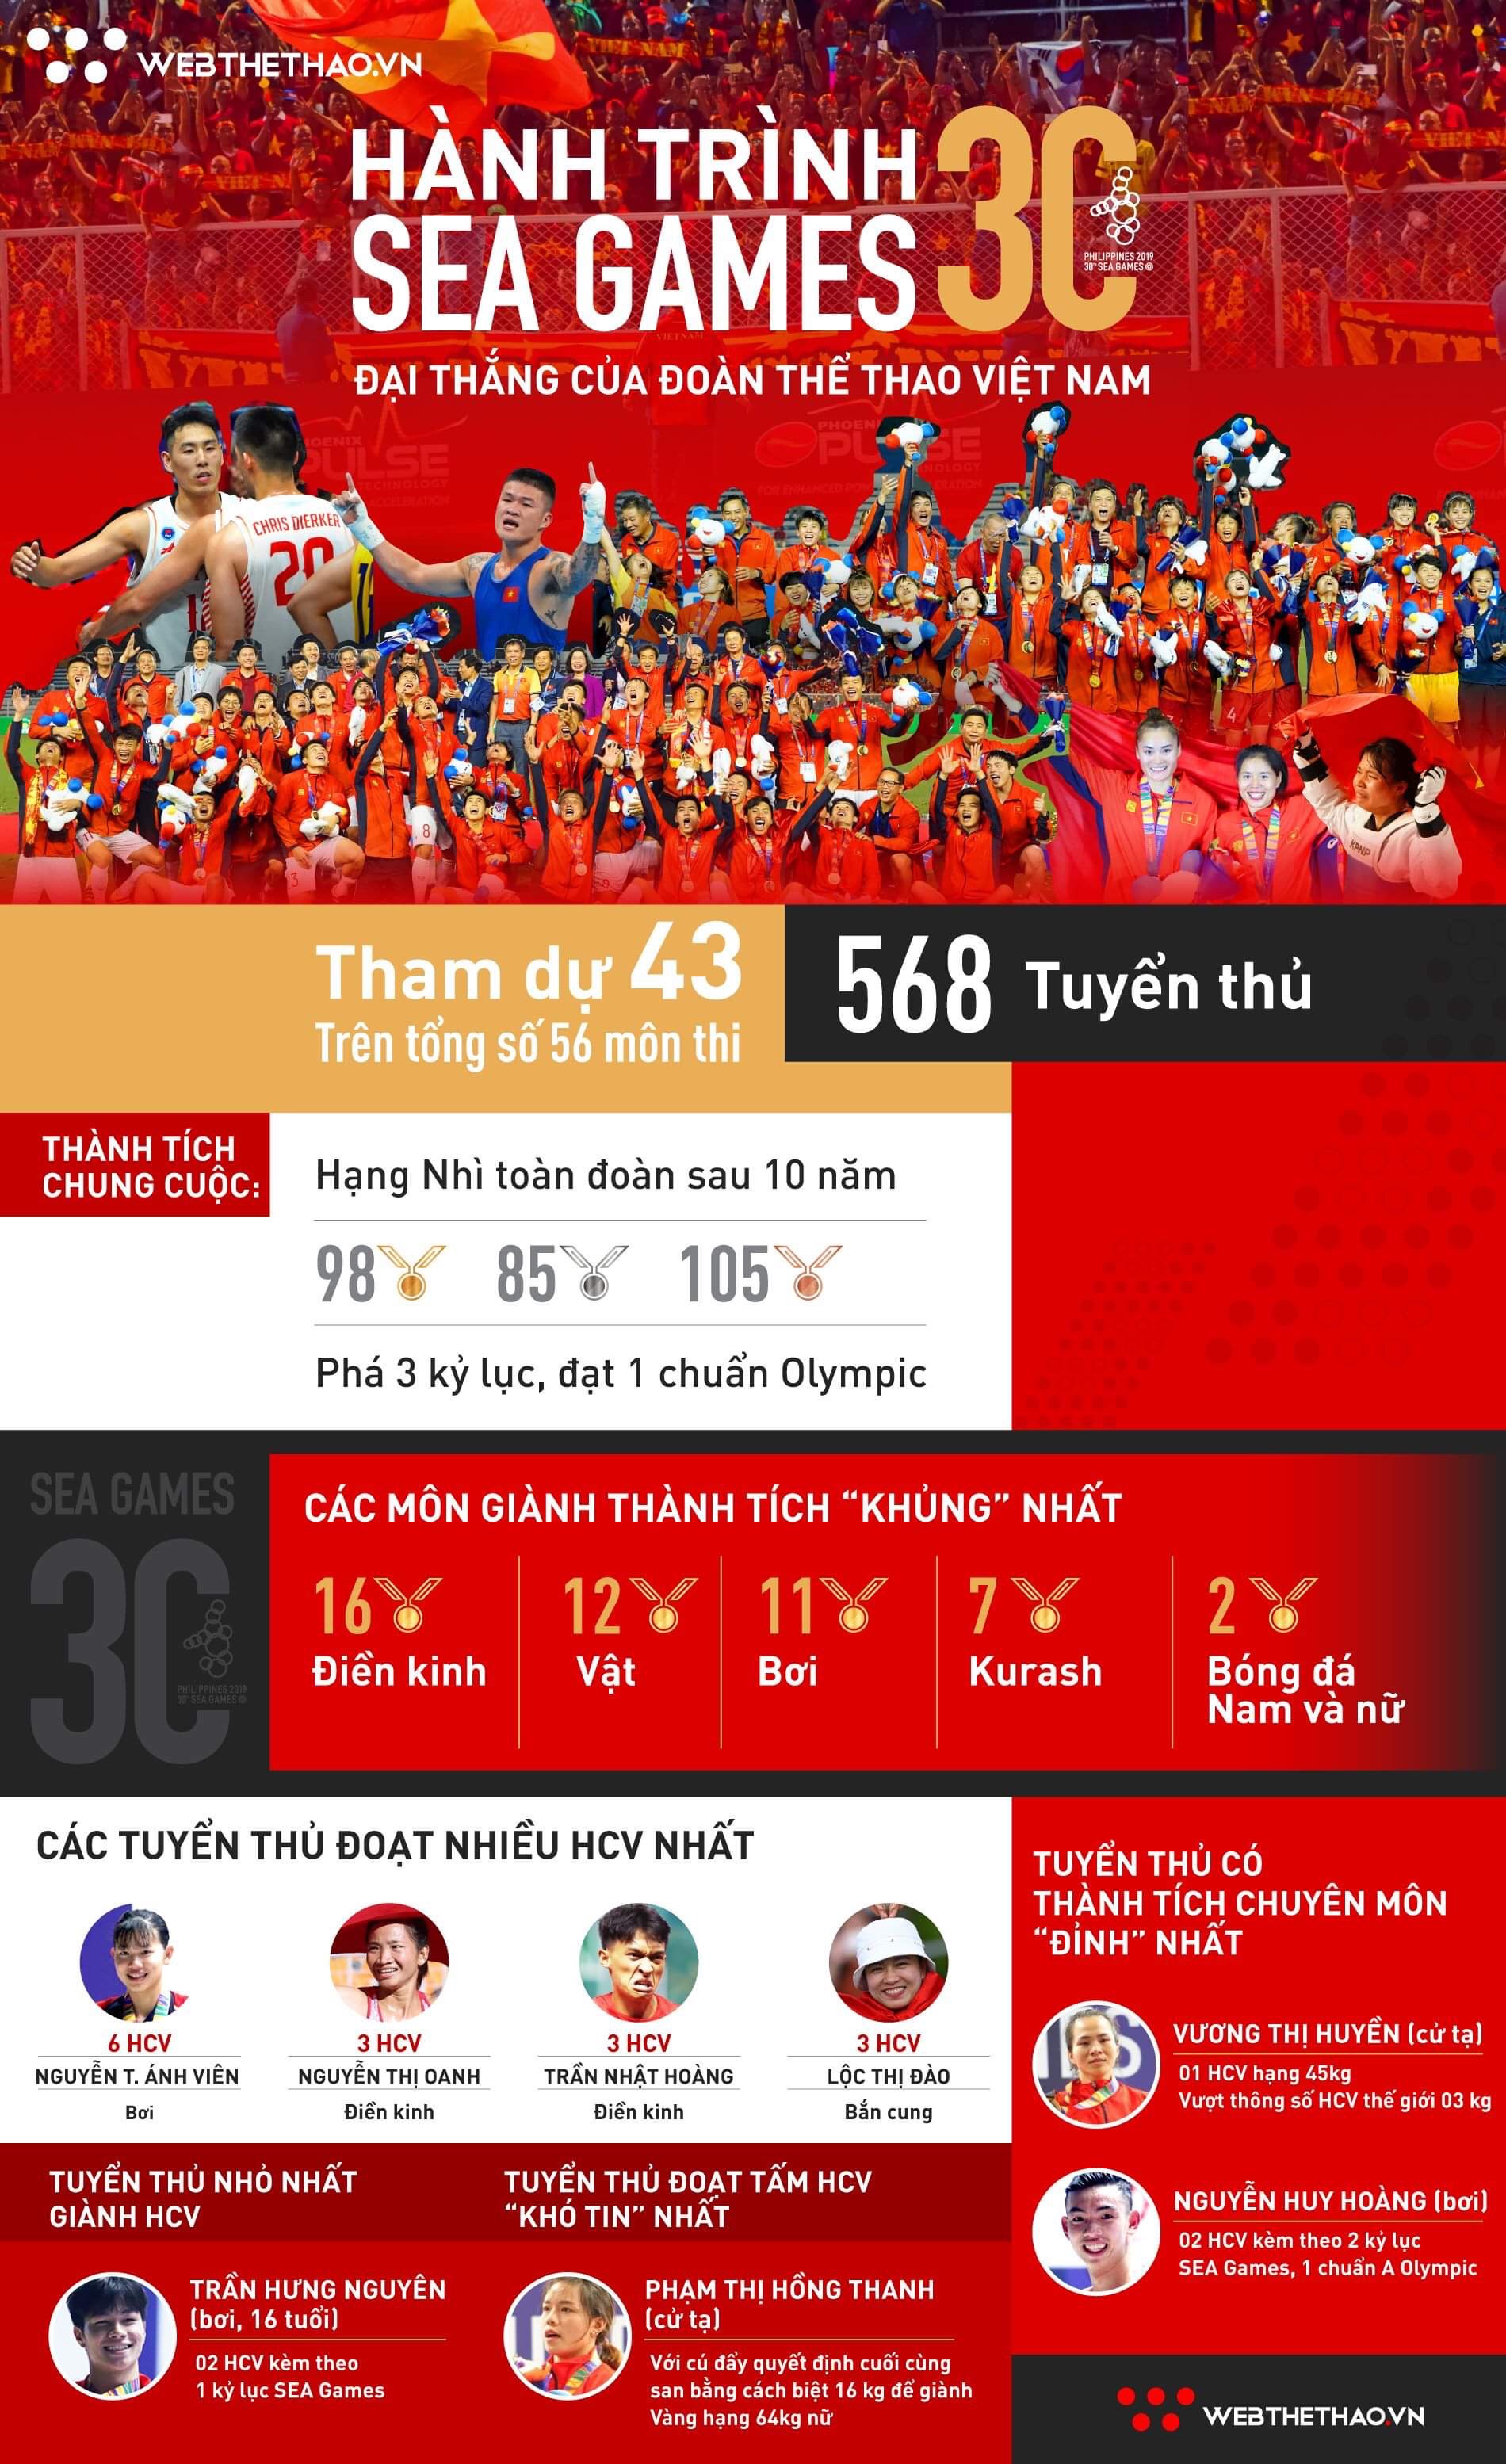 Toàn cảnh kỳ SEA Games 30 đại thắng của Thể thao Việt Nam